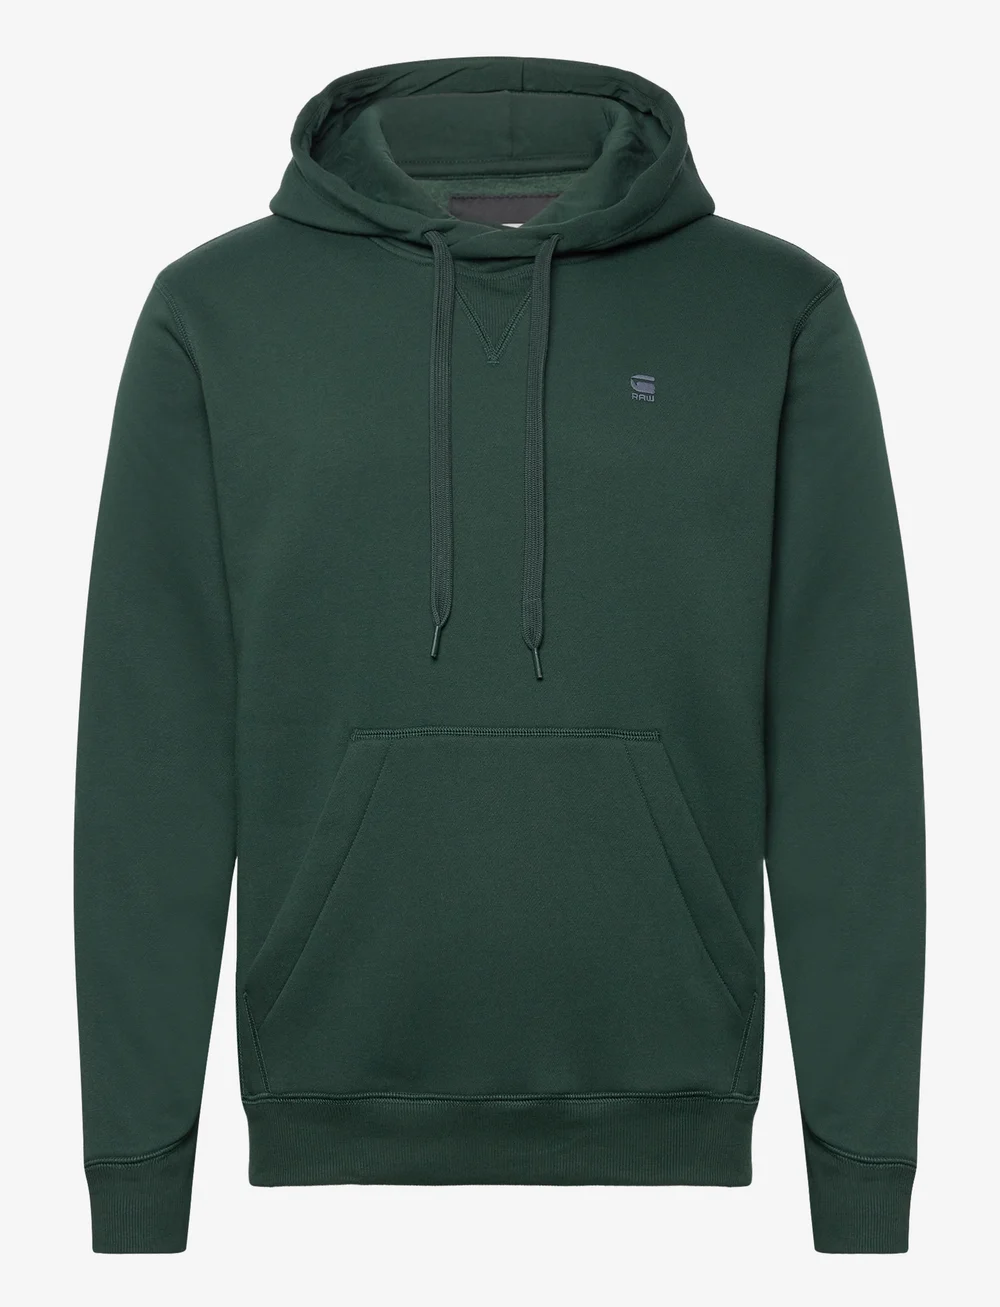 G-Star RAW Premium Core Hdd Sw L\s – sweatshirts & hoodies – shop at  Booztlet